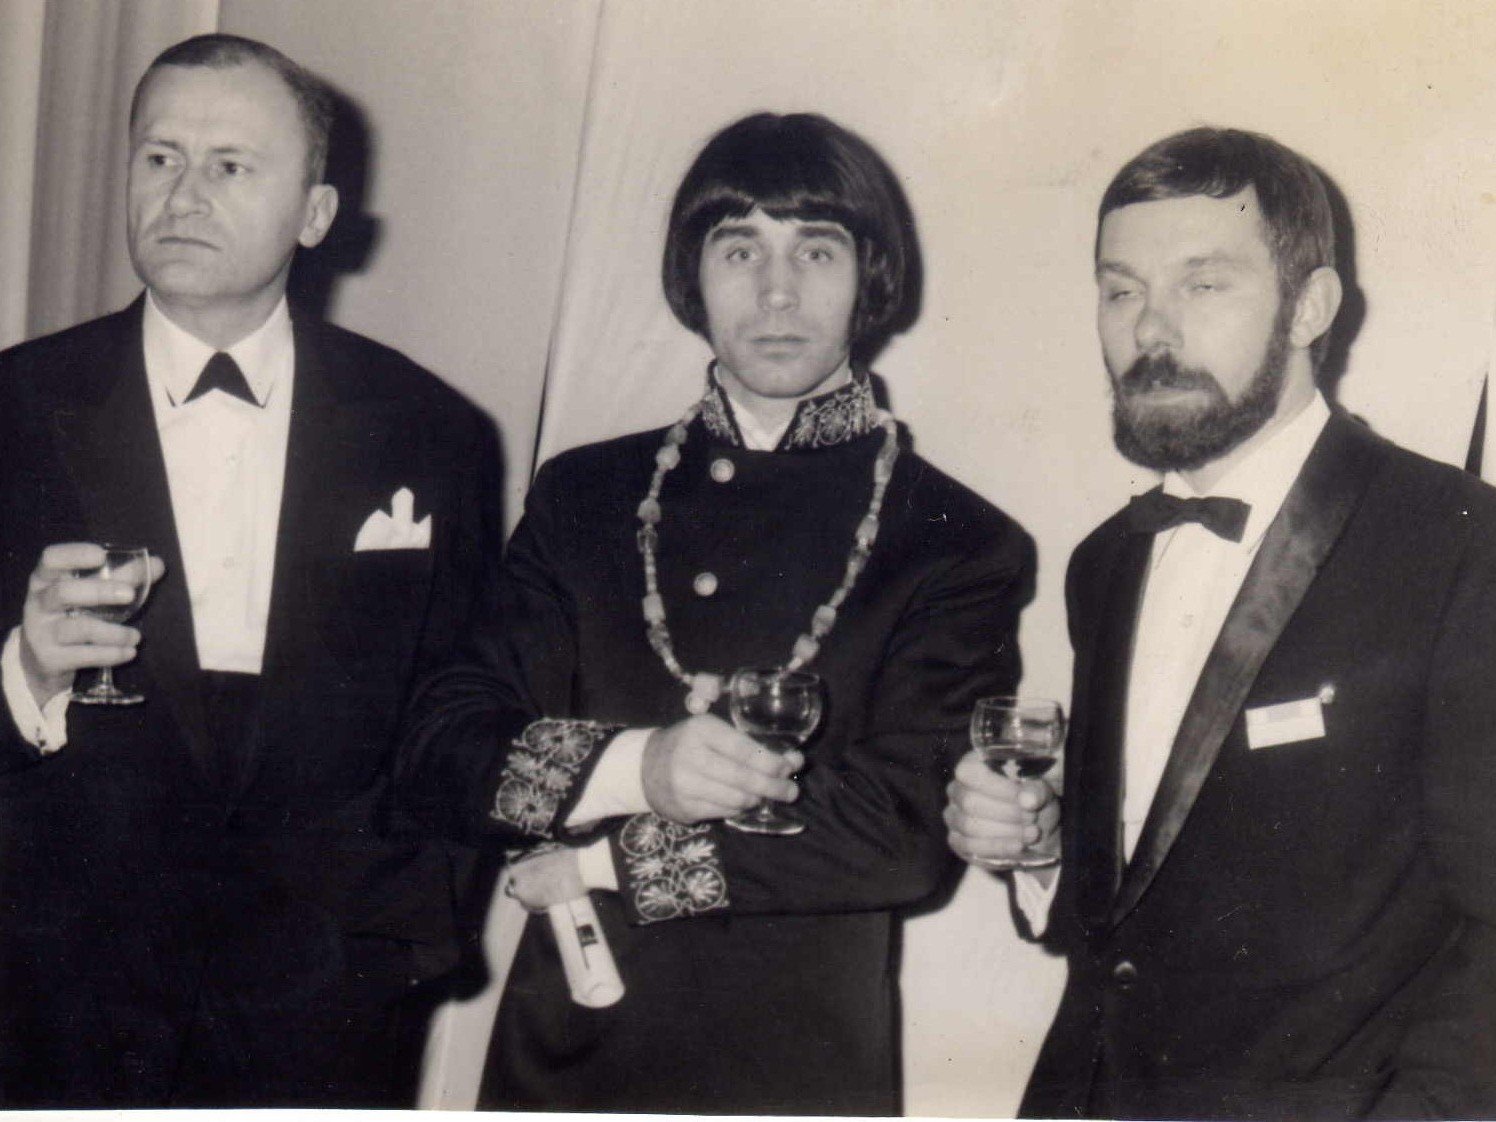 Targi Midem 1966, w środku Czesław Niemen, z prawej Andrzej Korzyński